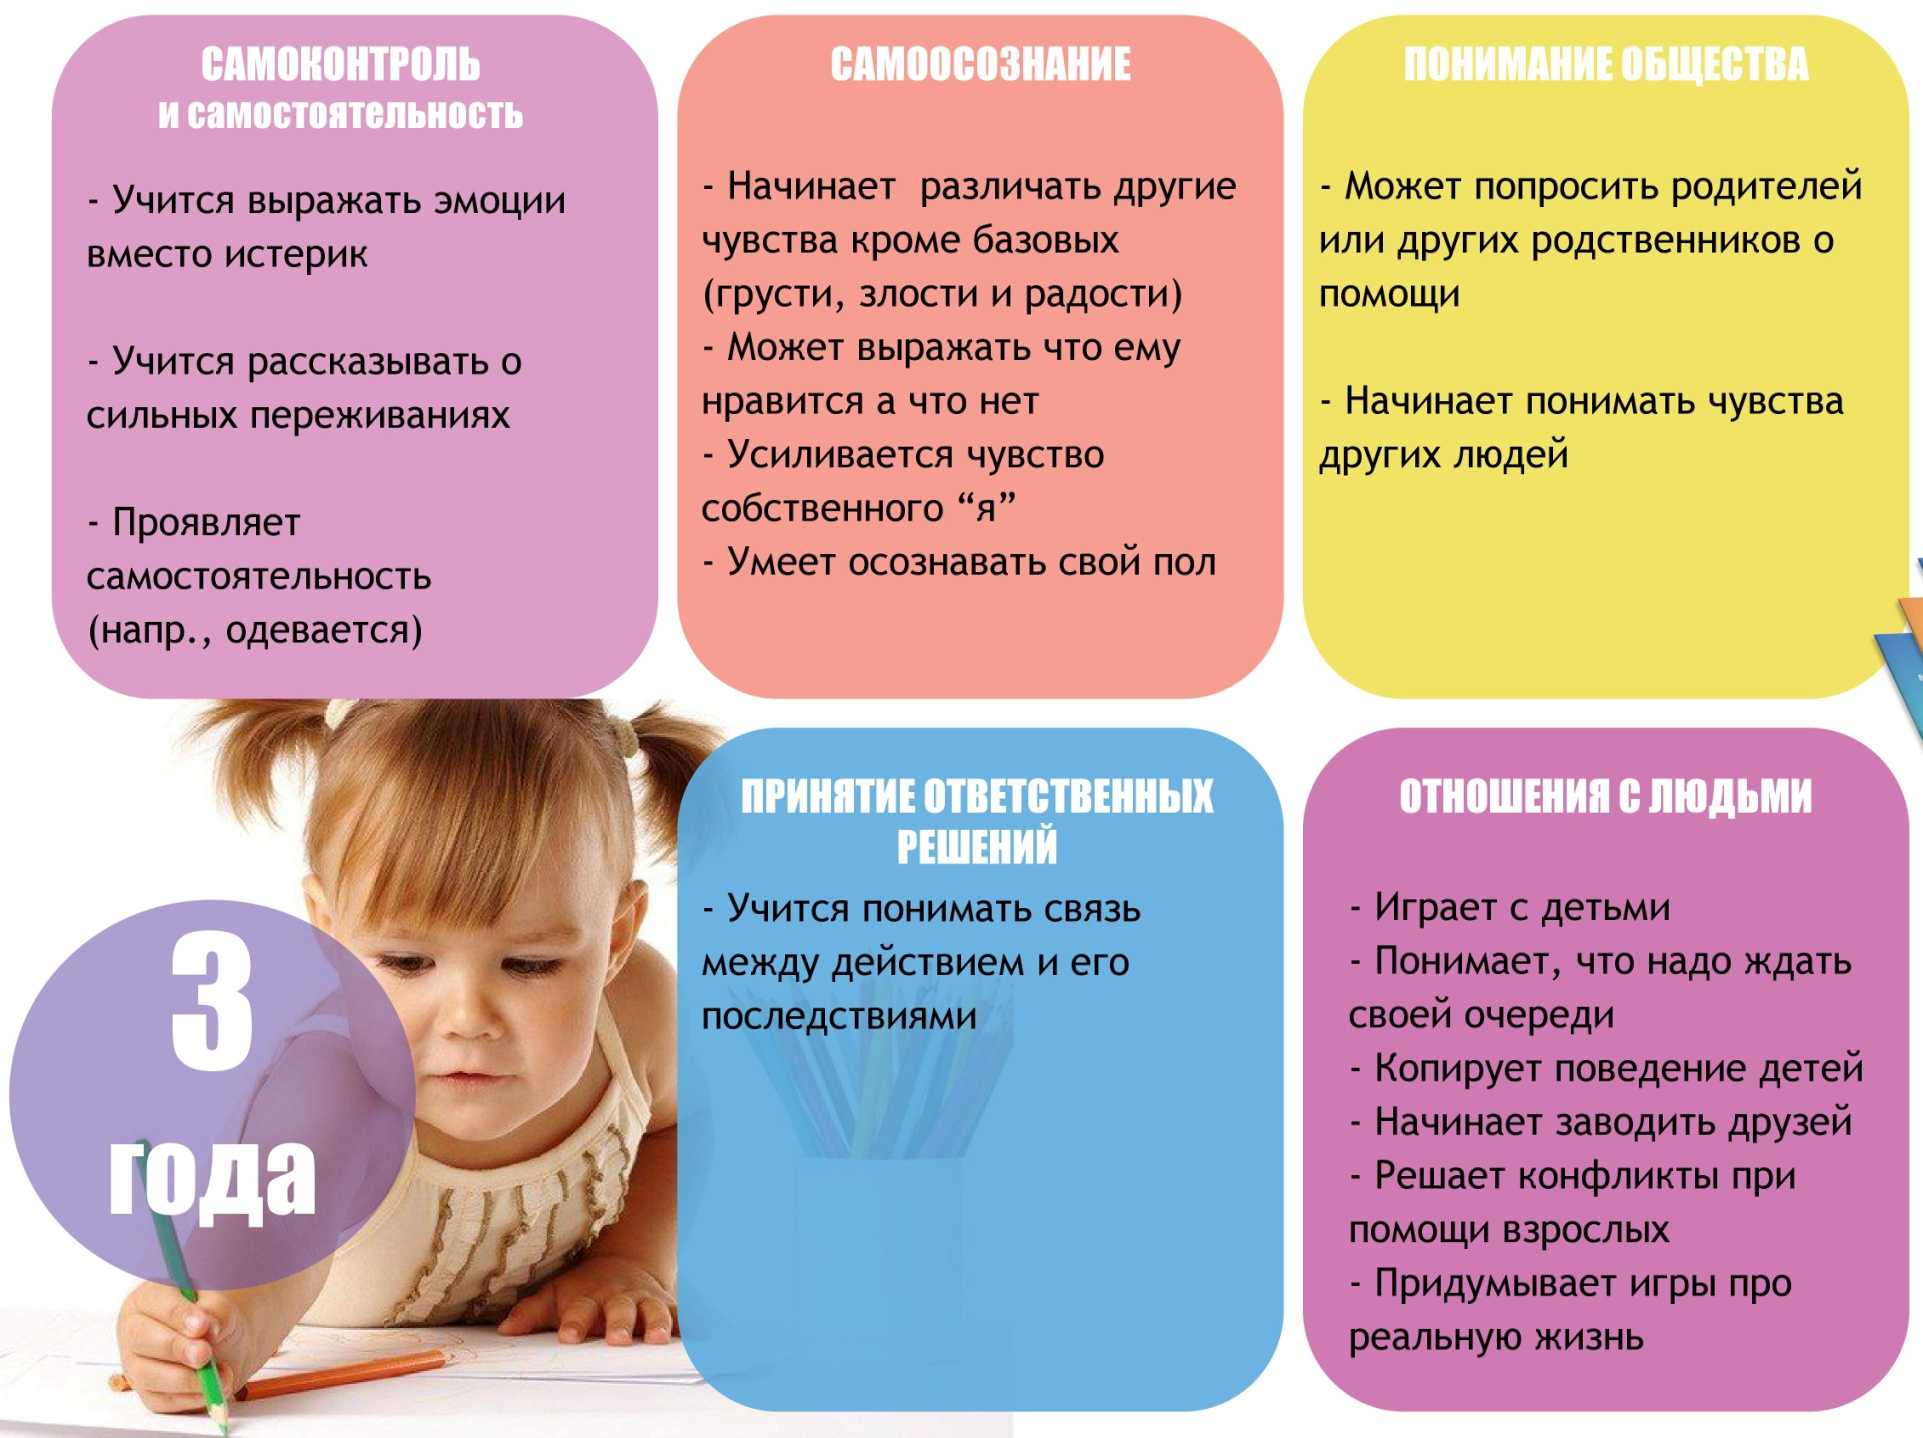 Не могу найти общий язык с мамой - что делать? отношения с мамой - советы психолога - psychbook.ru